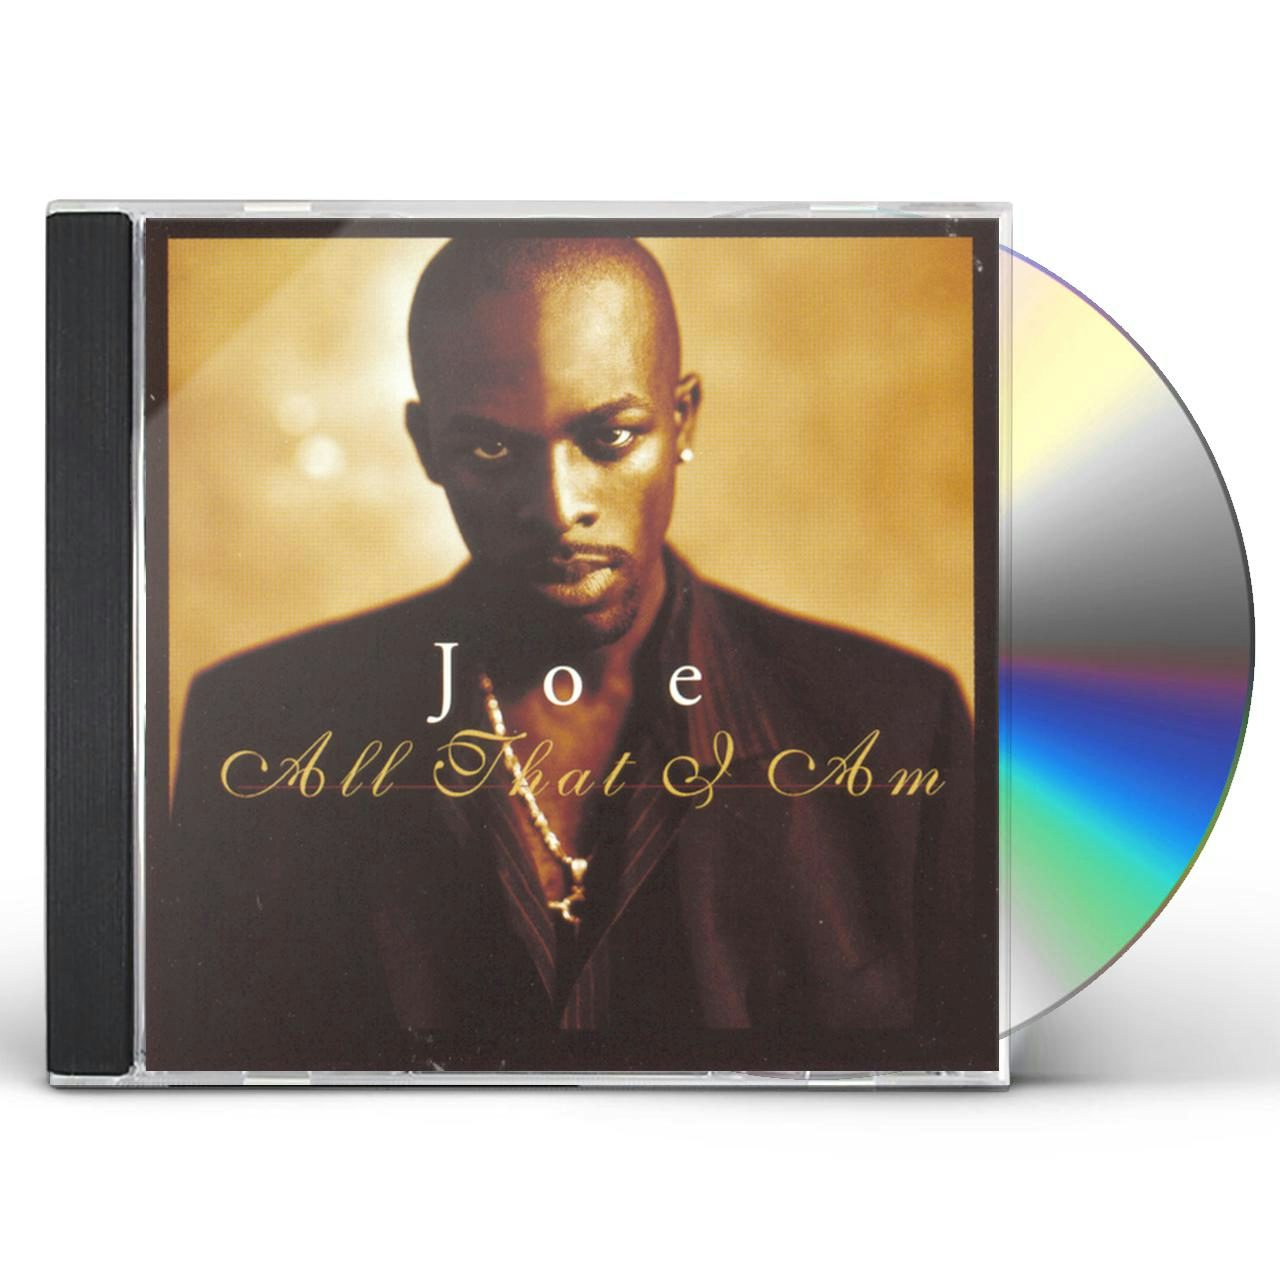 ALL THAT I AM CD - Joe